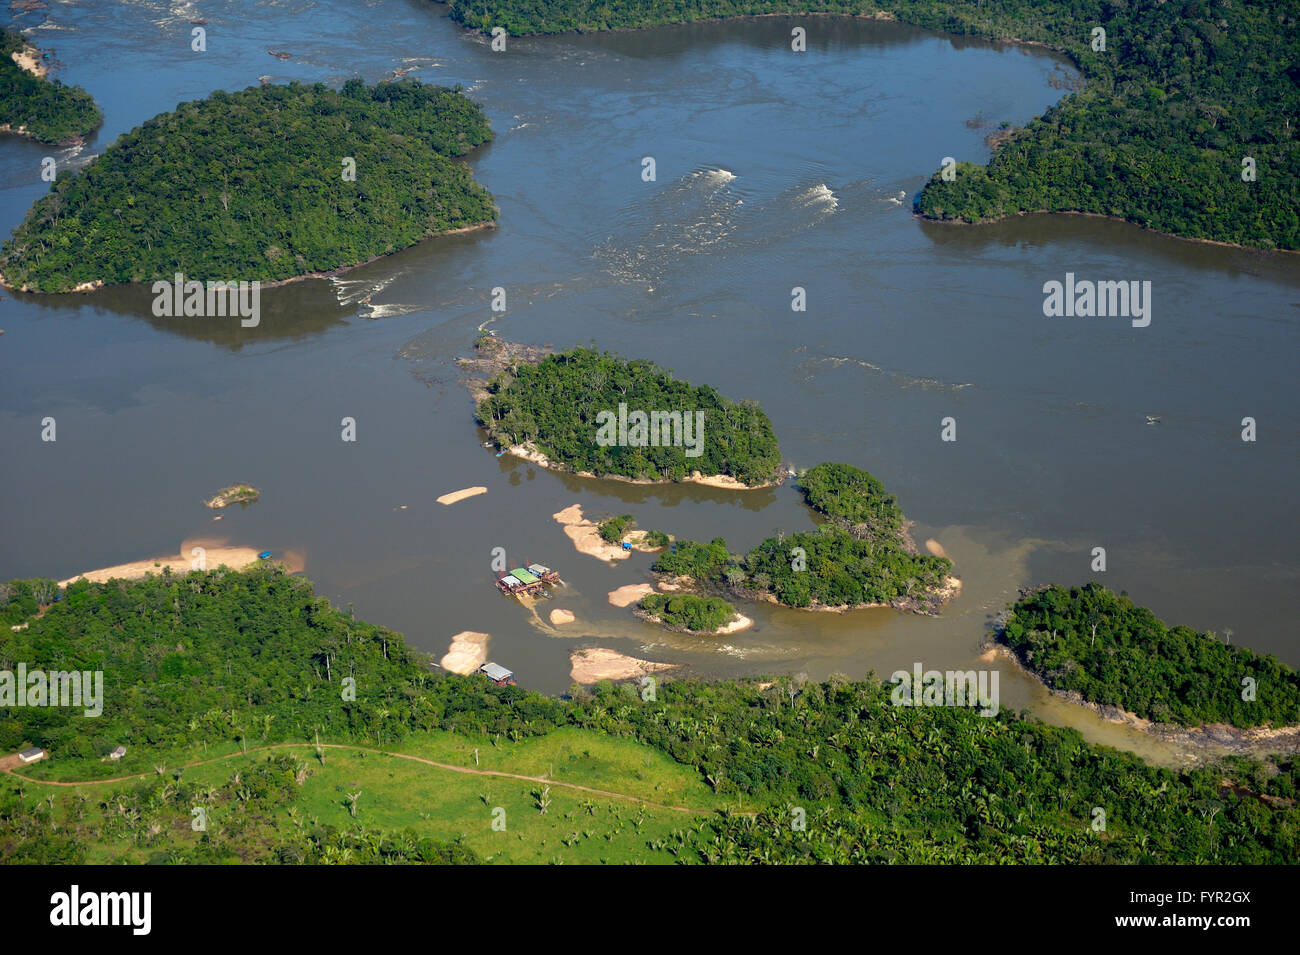 Vista aerea, zattere di cercatori d'oro o di garimpeiros in tropicali del fiume Rio Tapajos nella foresta amazzonica, distretto Itaituba Foto Stock